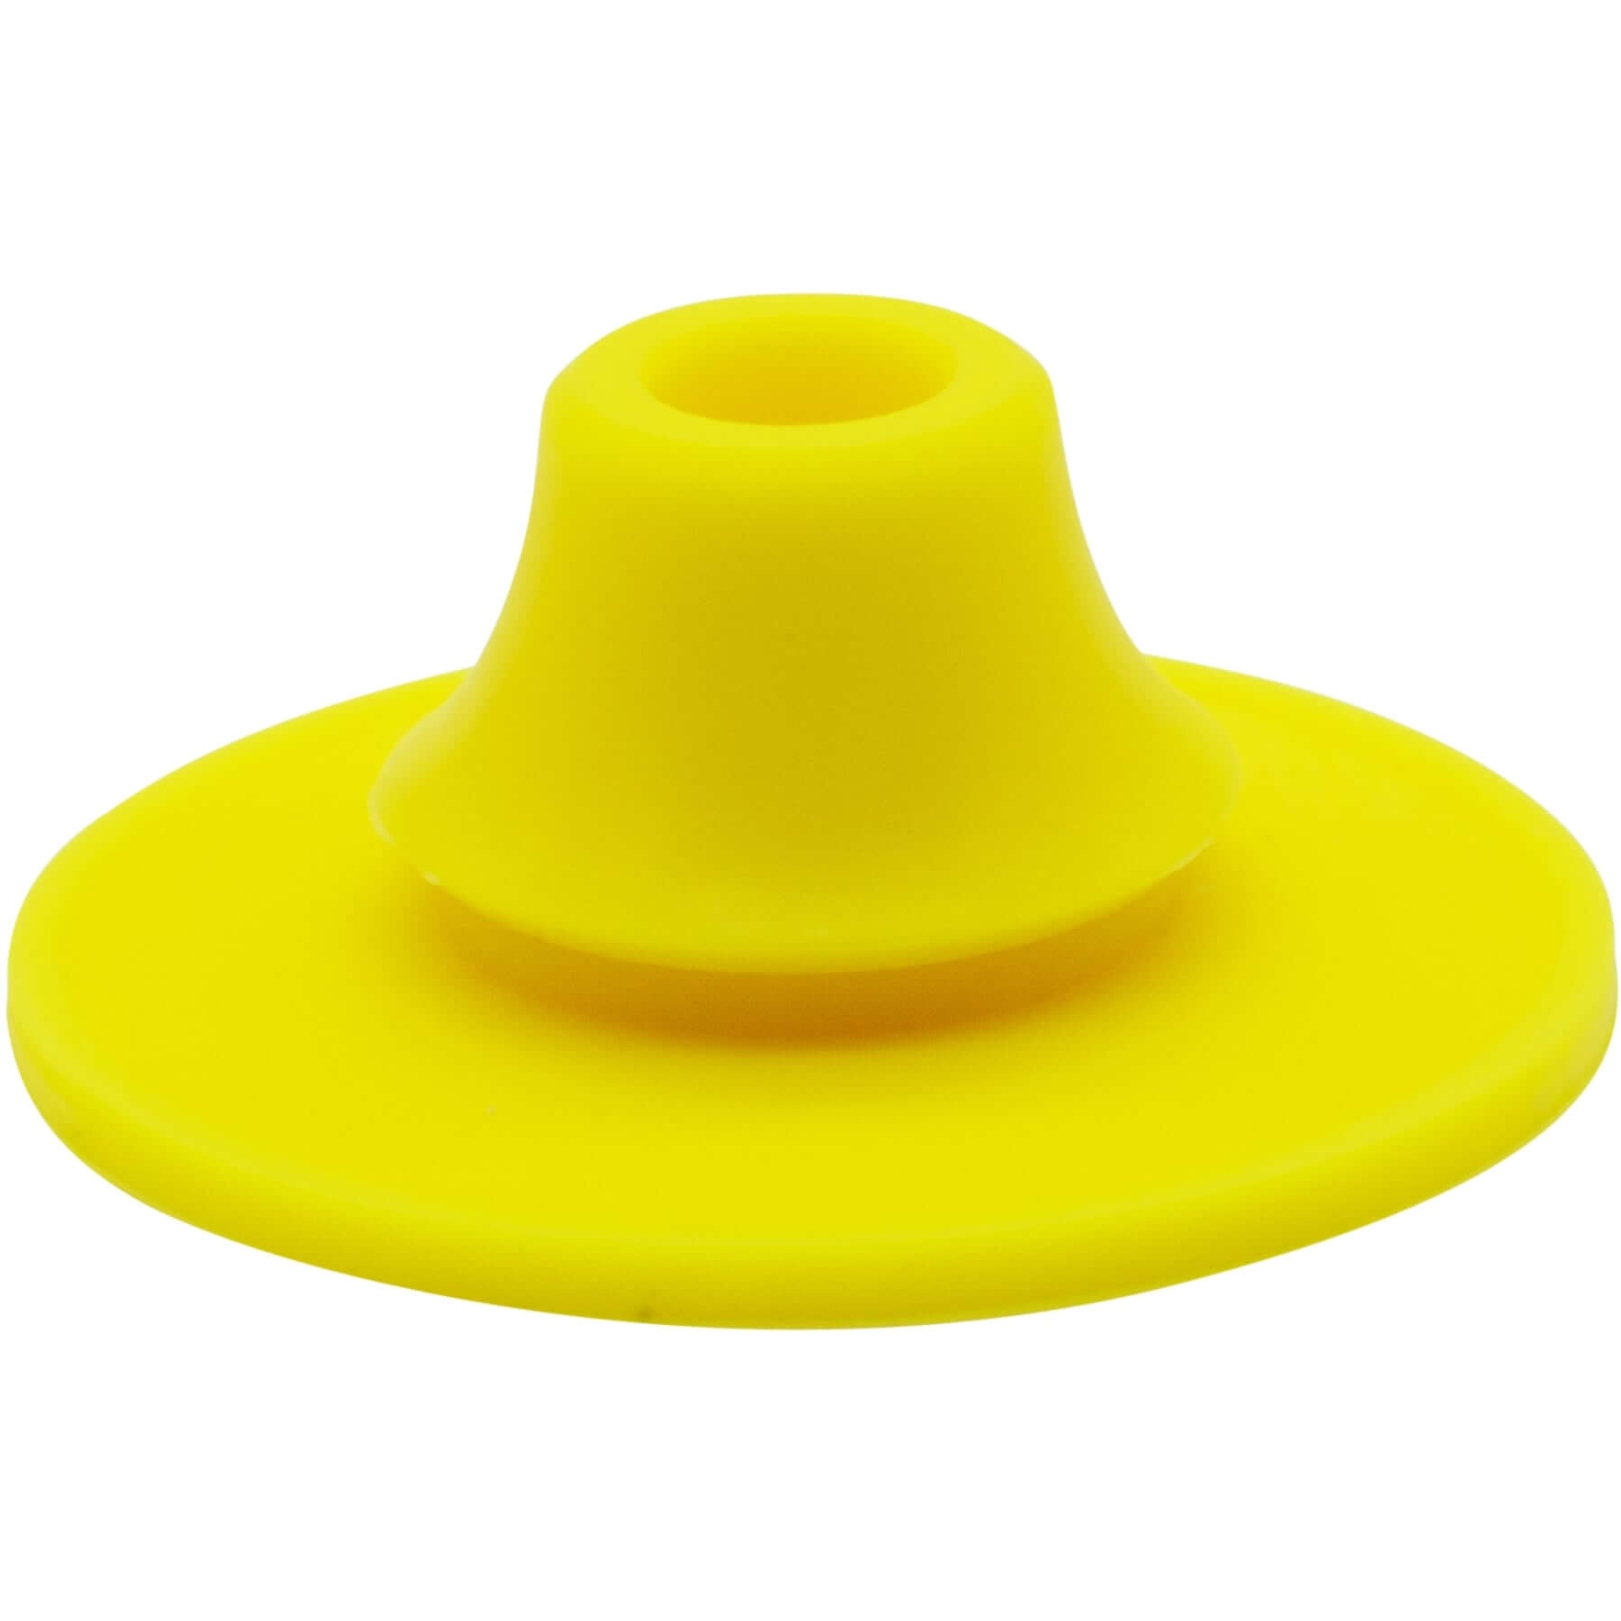 Productfoto van KEEGO Easy Clean Nop - Solar Yellow